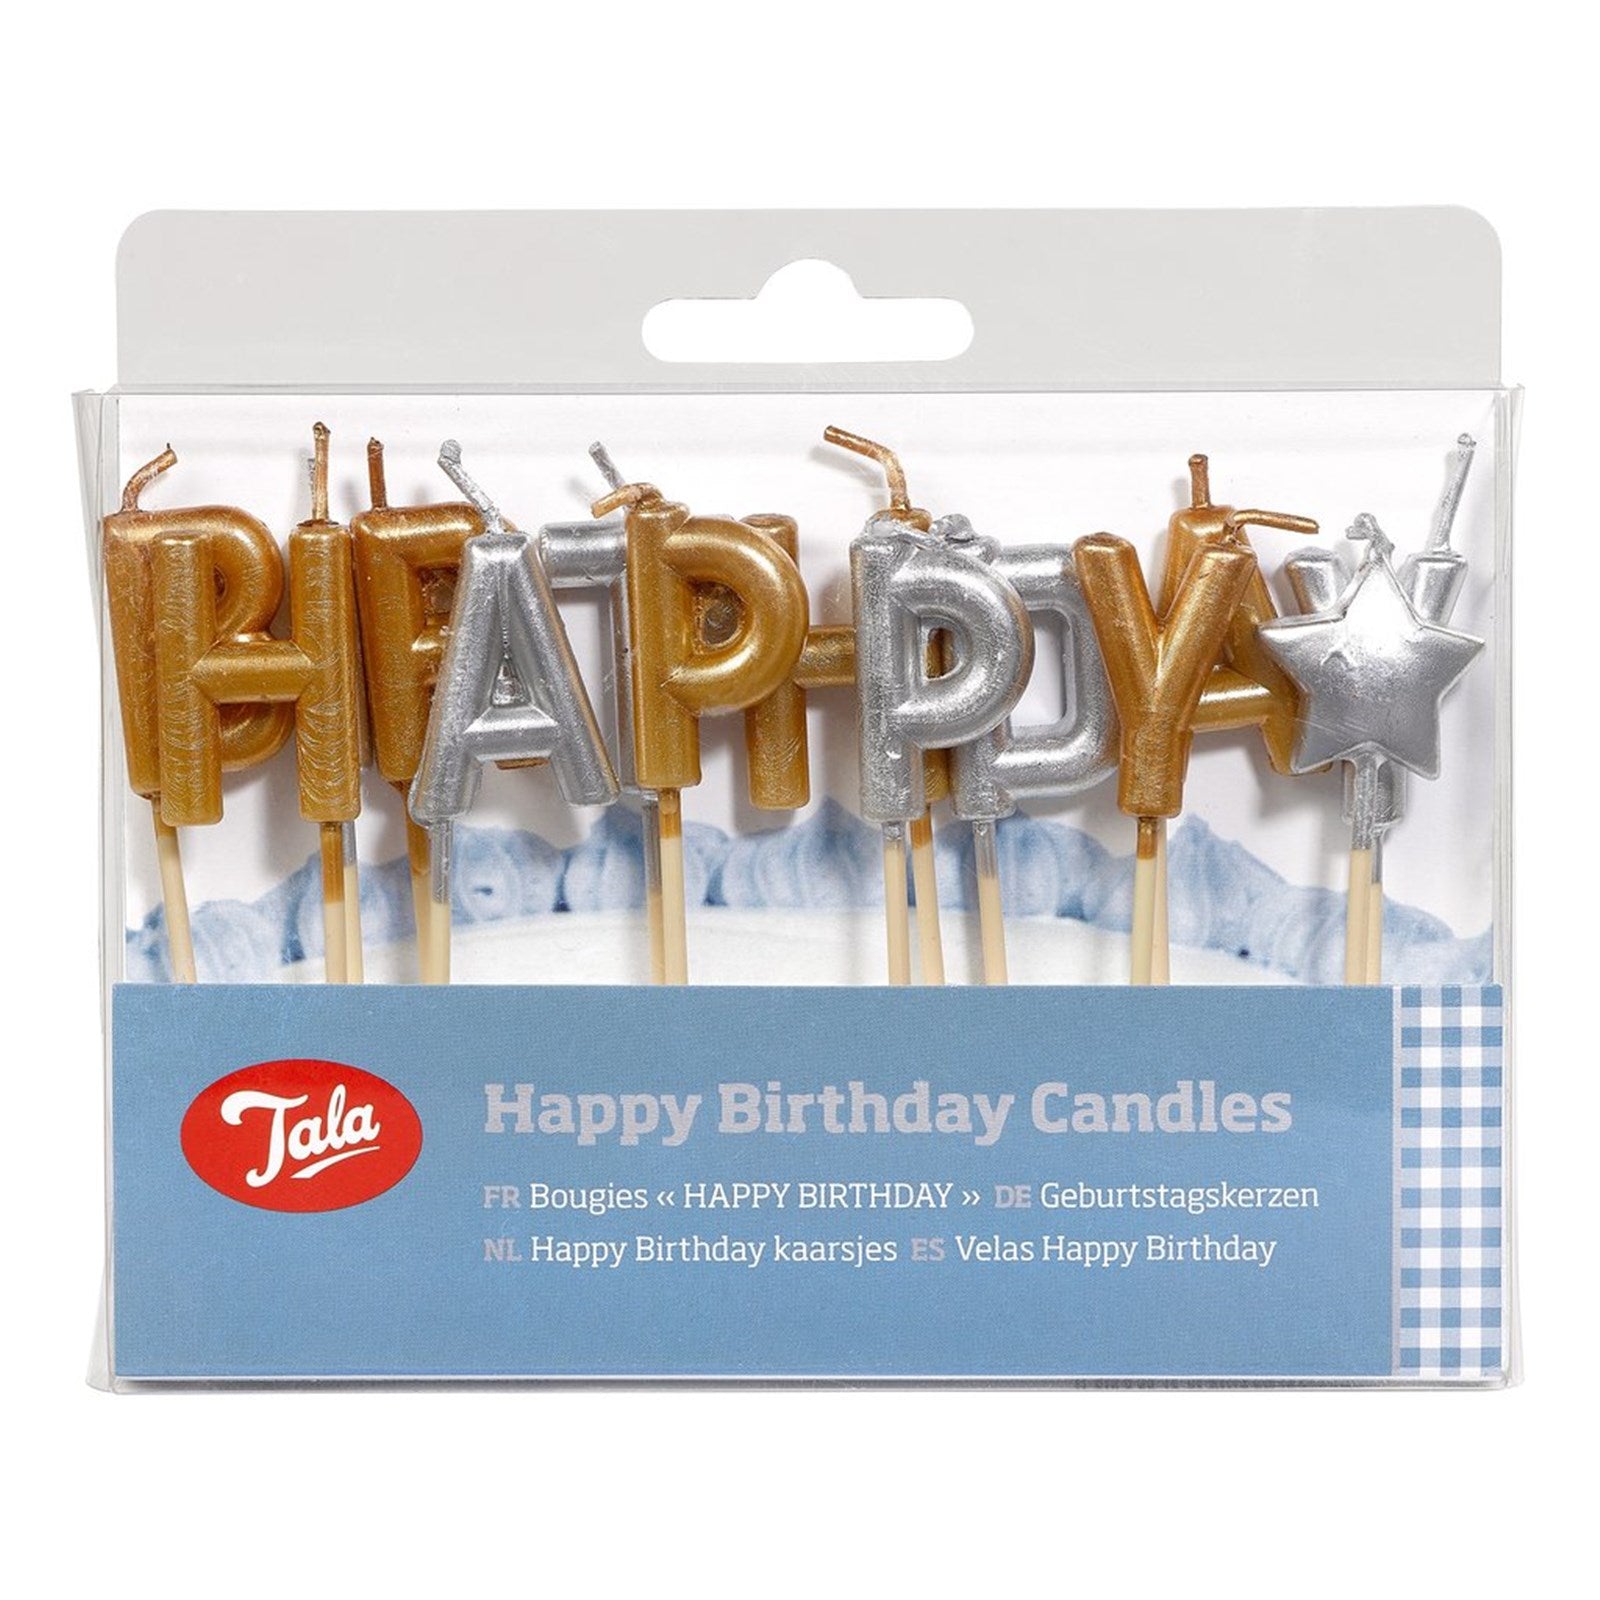 Kerzen Happy Birthday in gold und silber in  präsentiert im Onlineshop von KAQTU Design AG. Kerzen ist von Tala